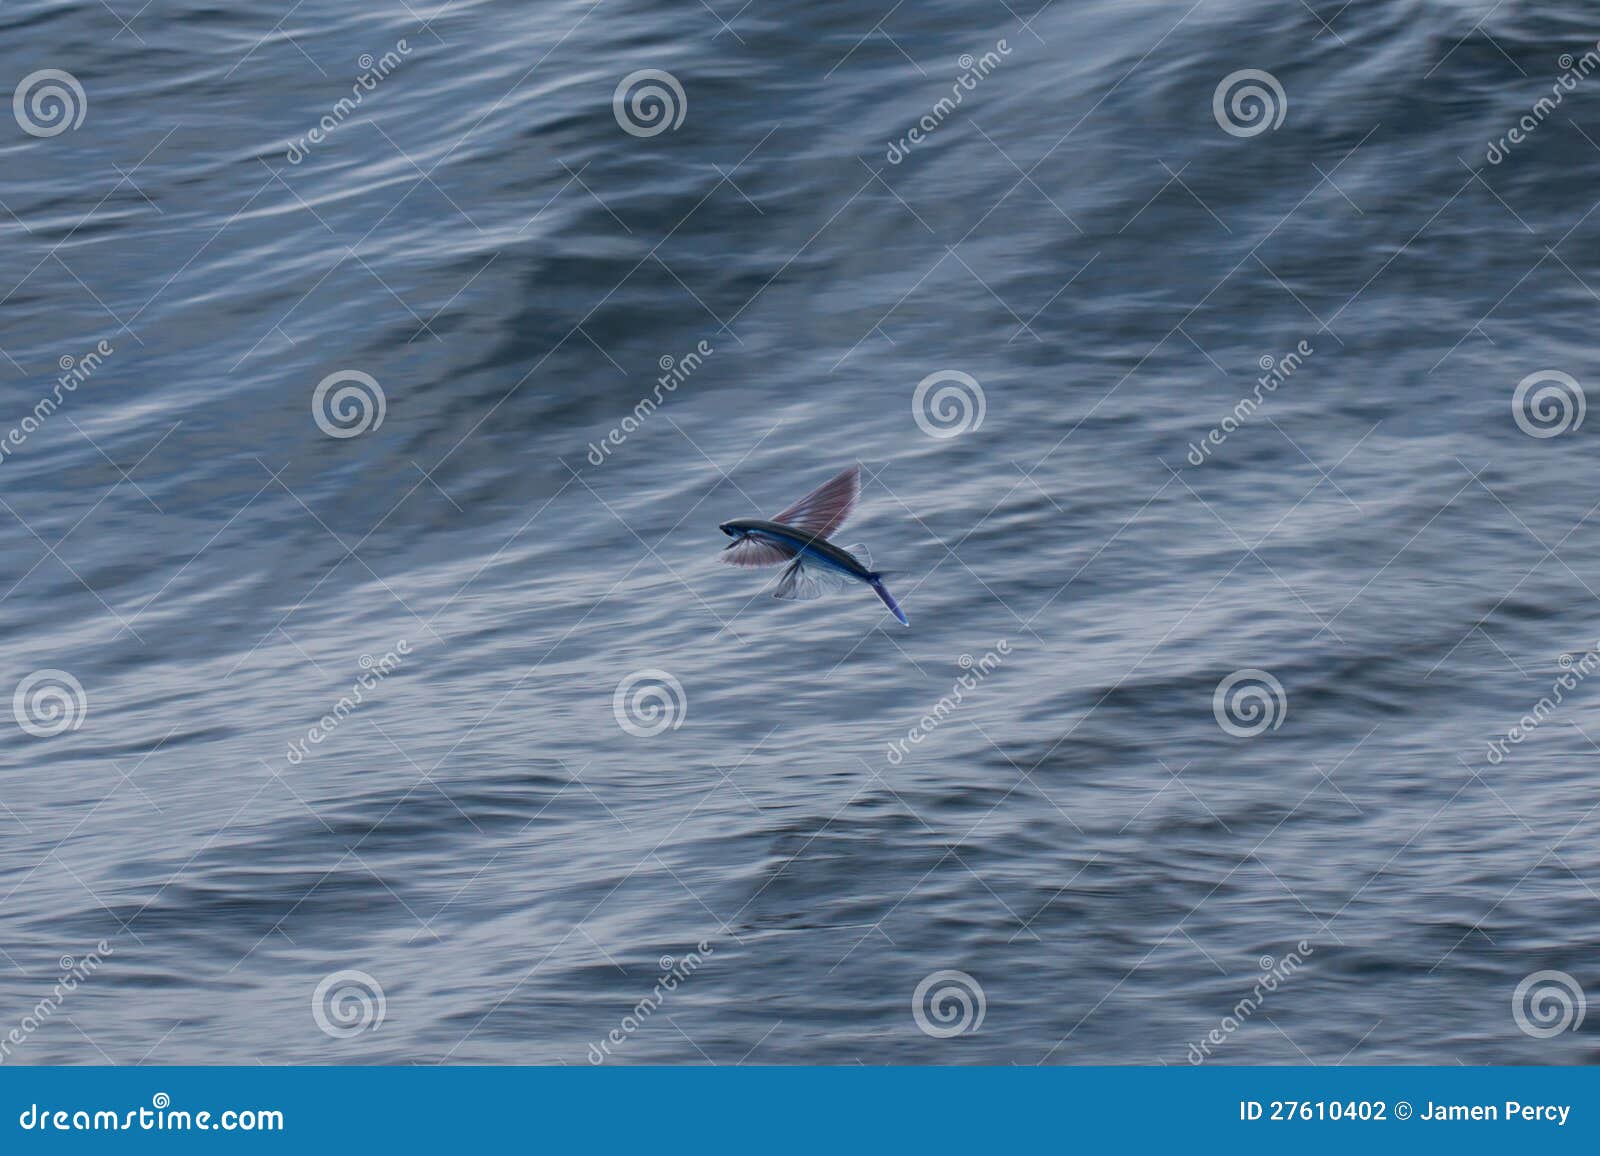 Flying fish stock photo. Image of flight, flyingfish - 27610402